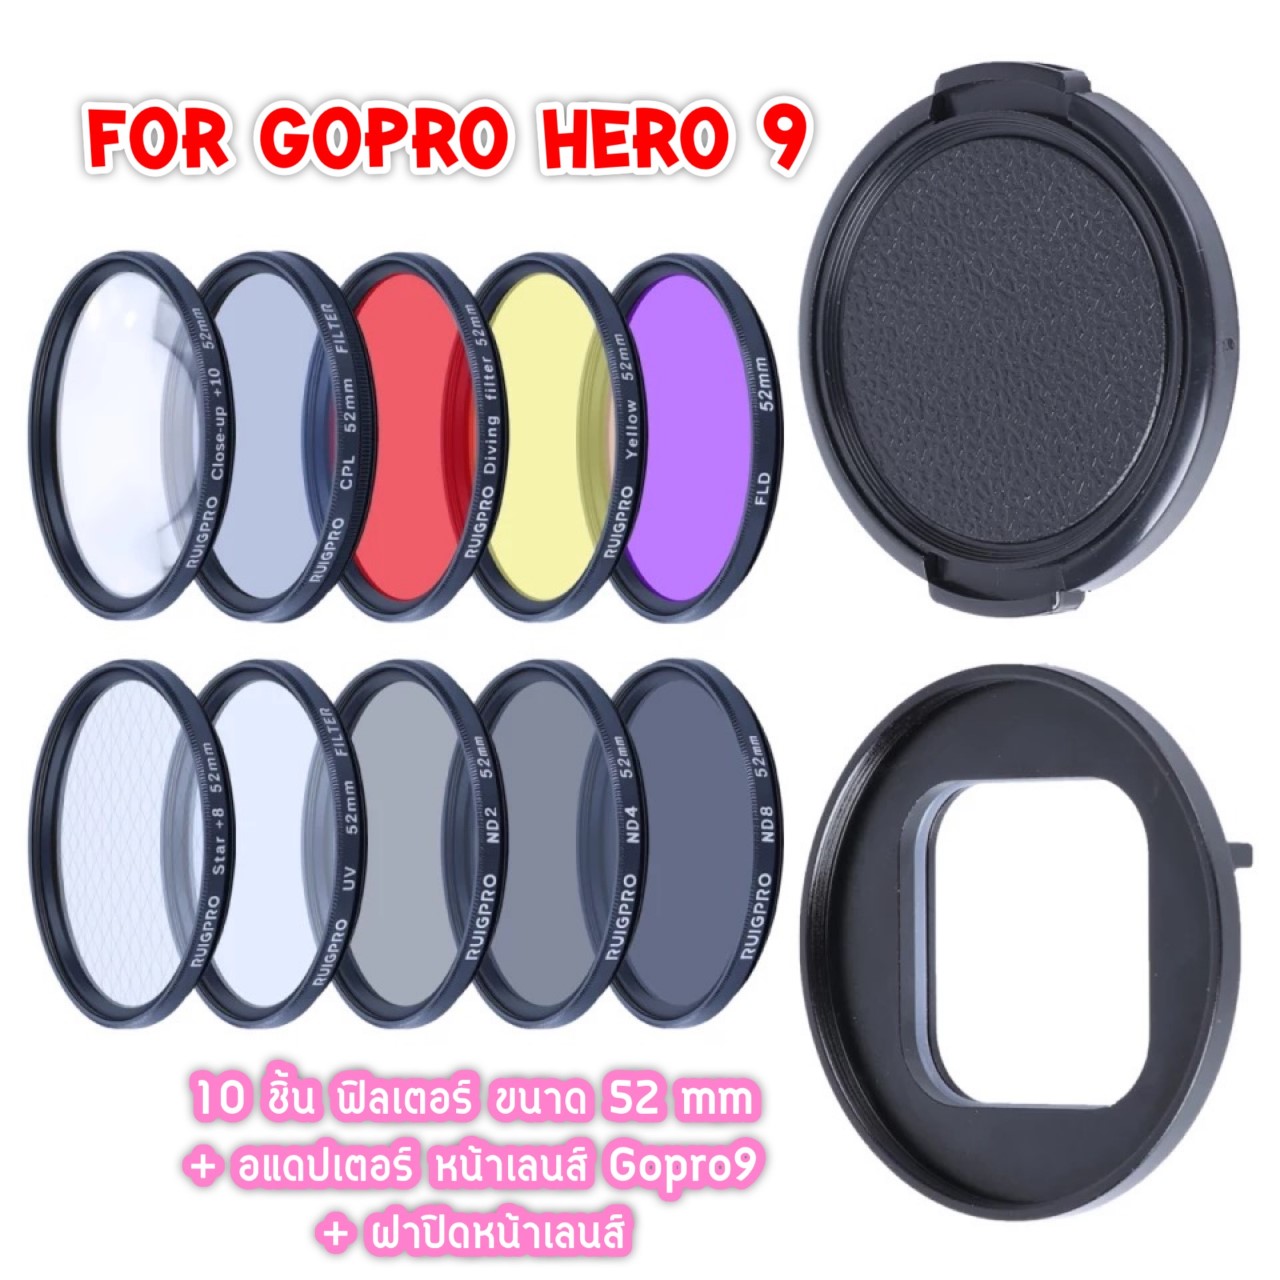 10 ชิ้น Filter Gopro Hero 9 filter 52mm CPL RED FLD ND4 6 8 Close-up+10 Lens Diving Accessories For Gopro Hero 9